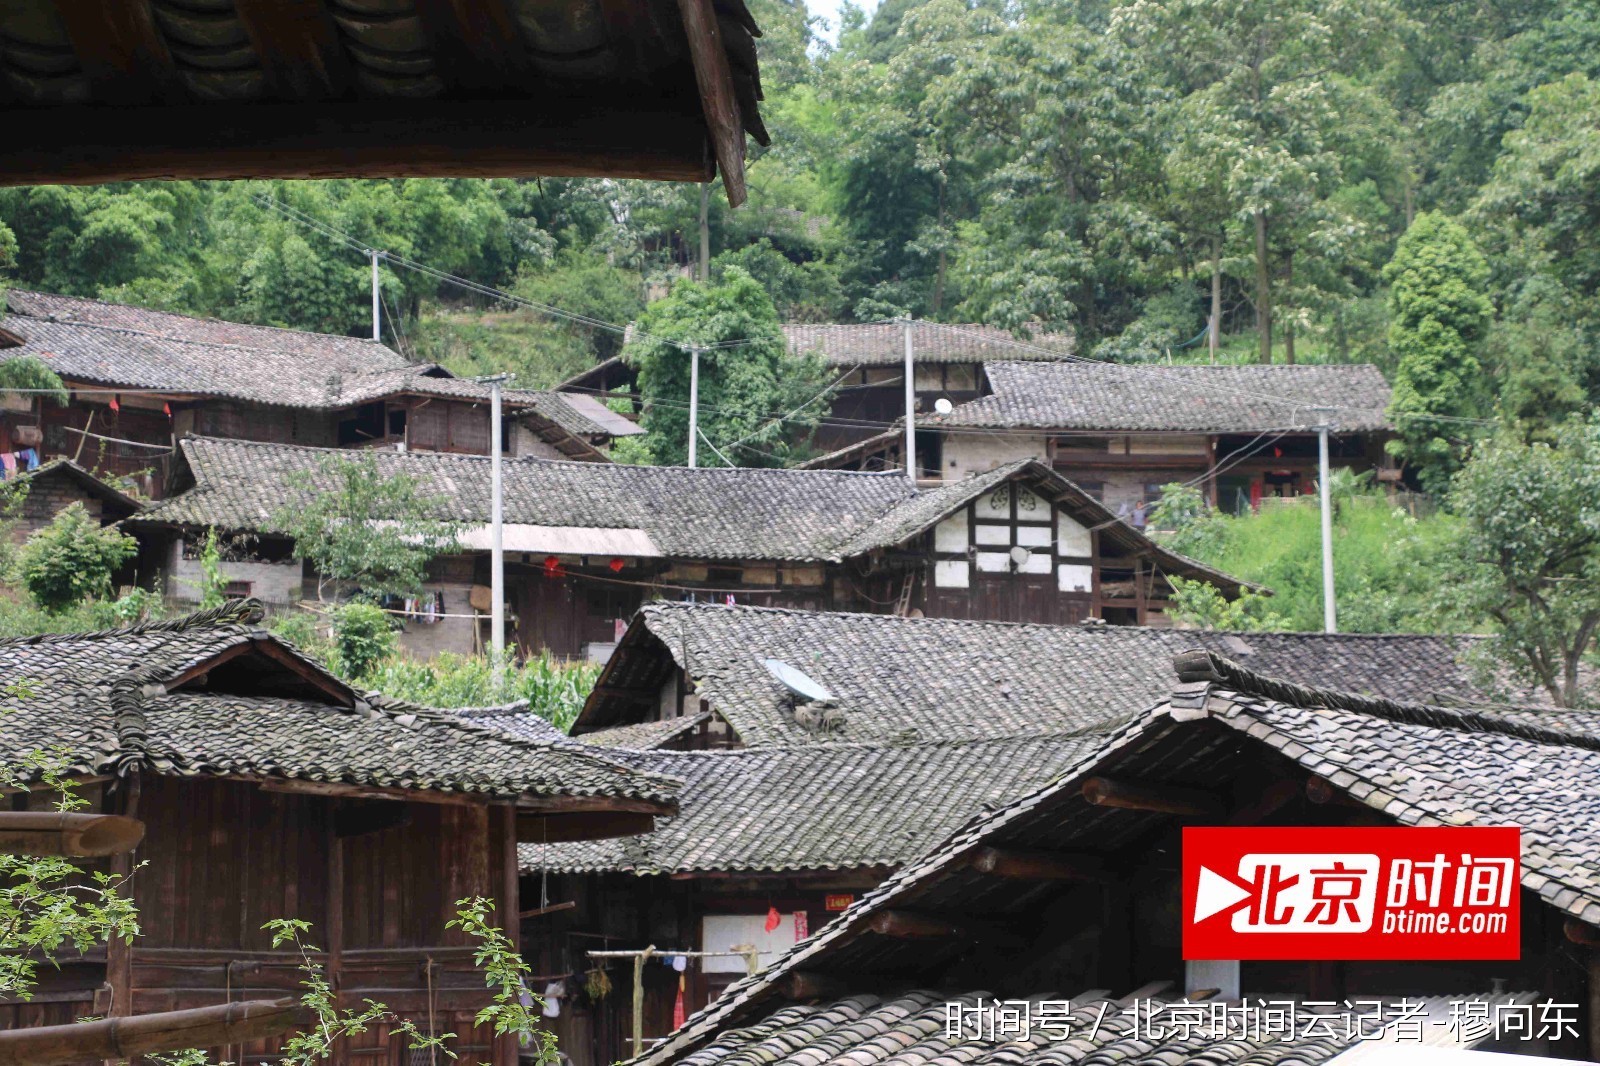 黔北遵义的一个小山村里,北京时间云记者拍摄一栋栋黑瓦木墙民居点缀